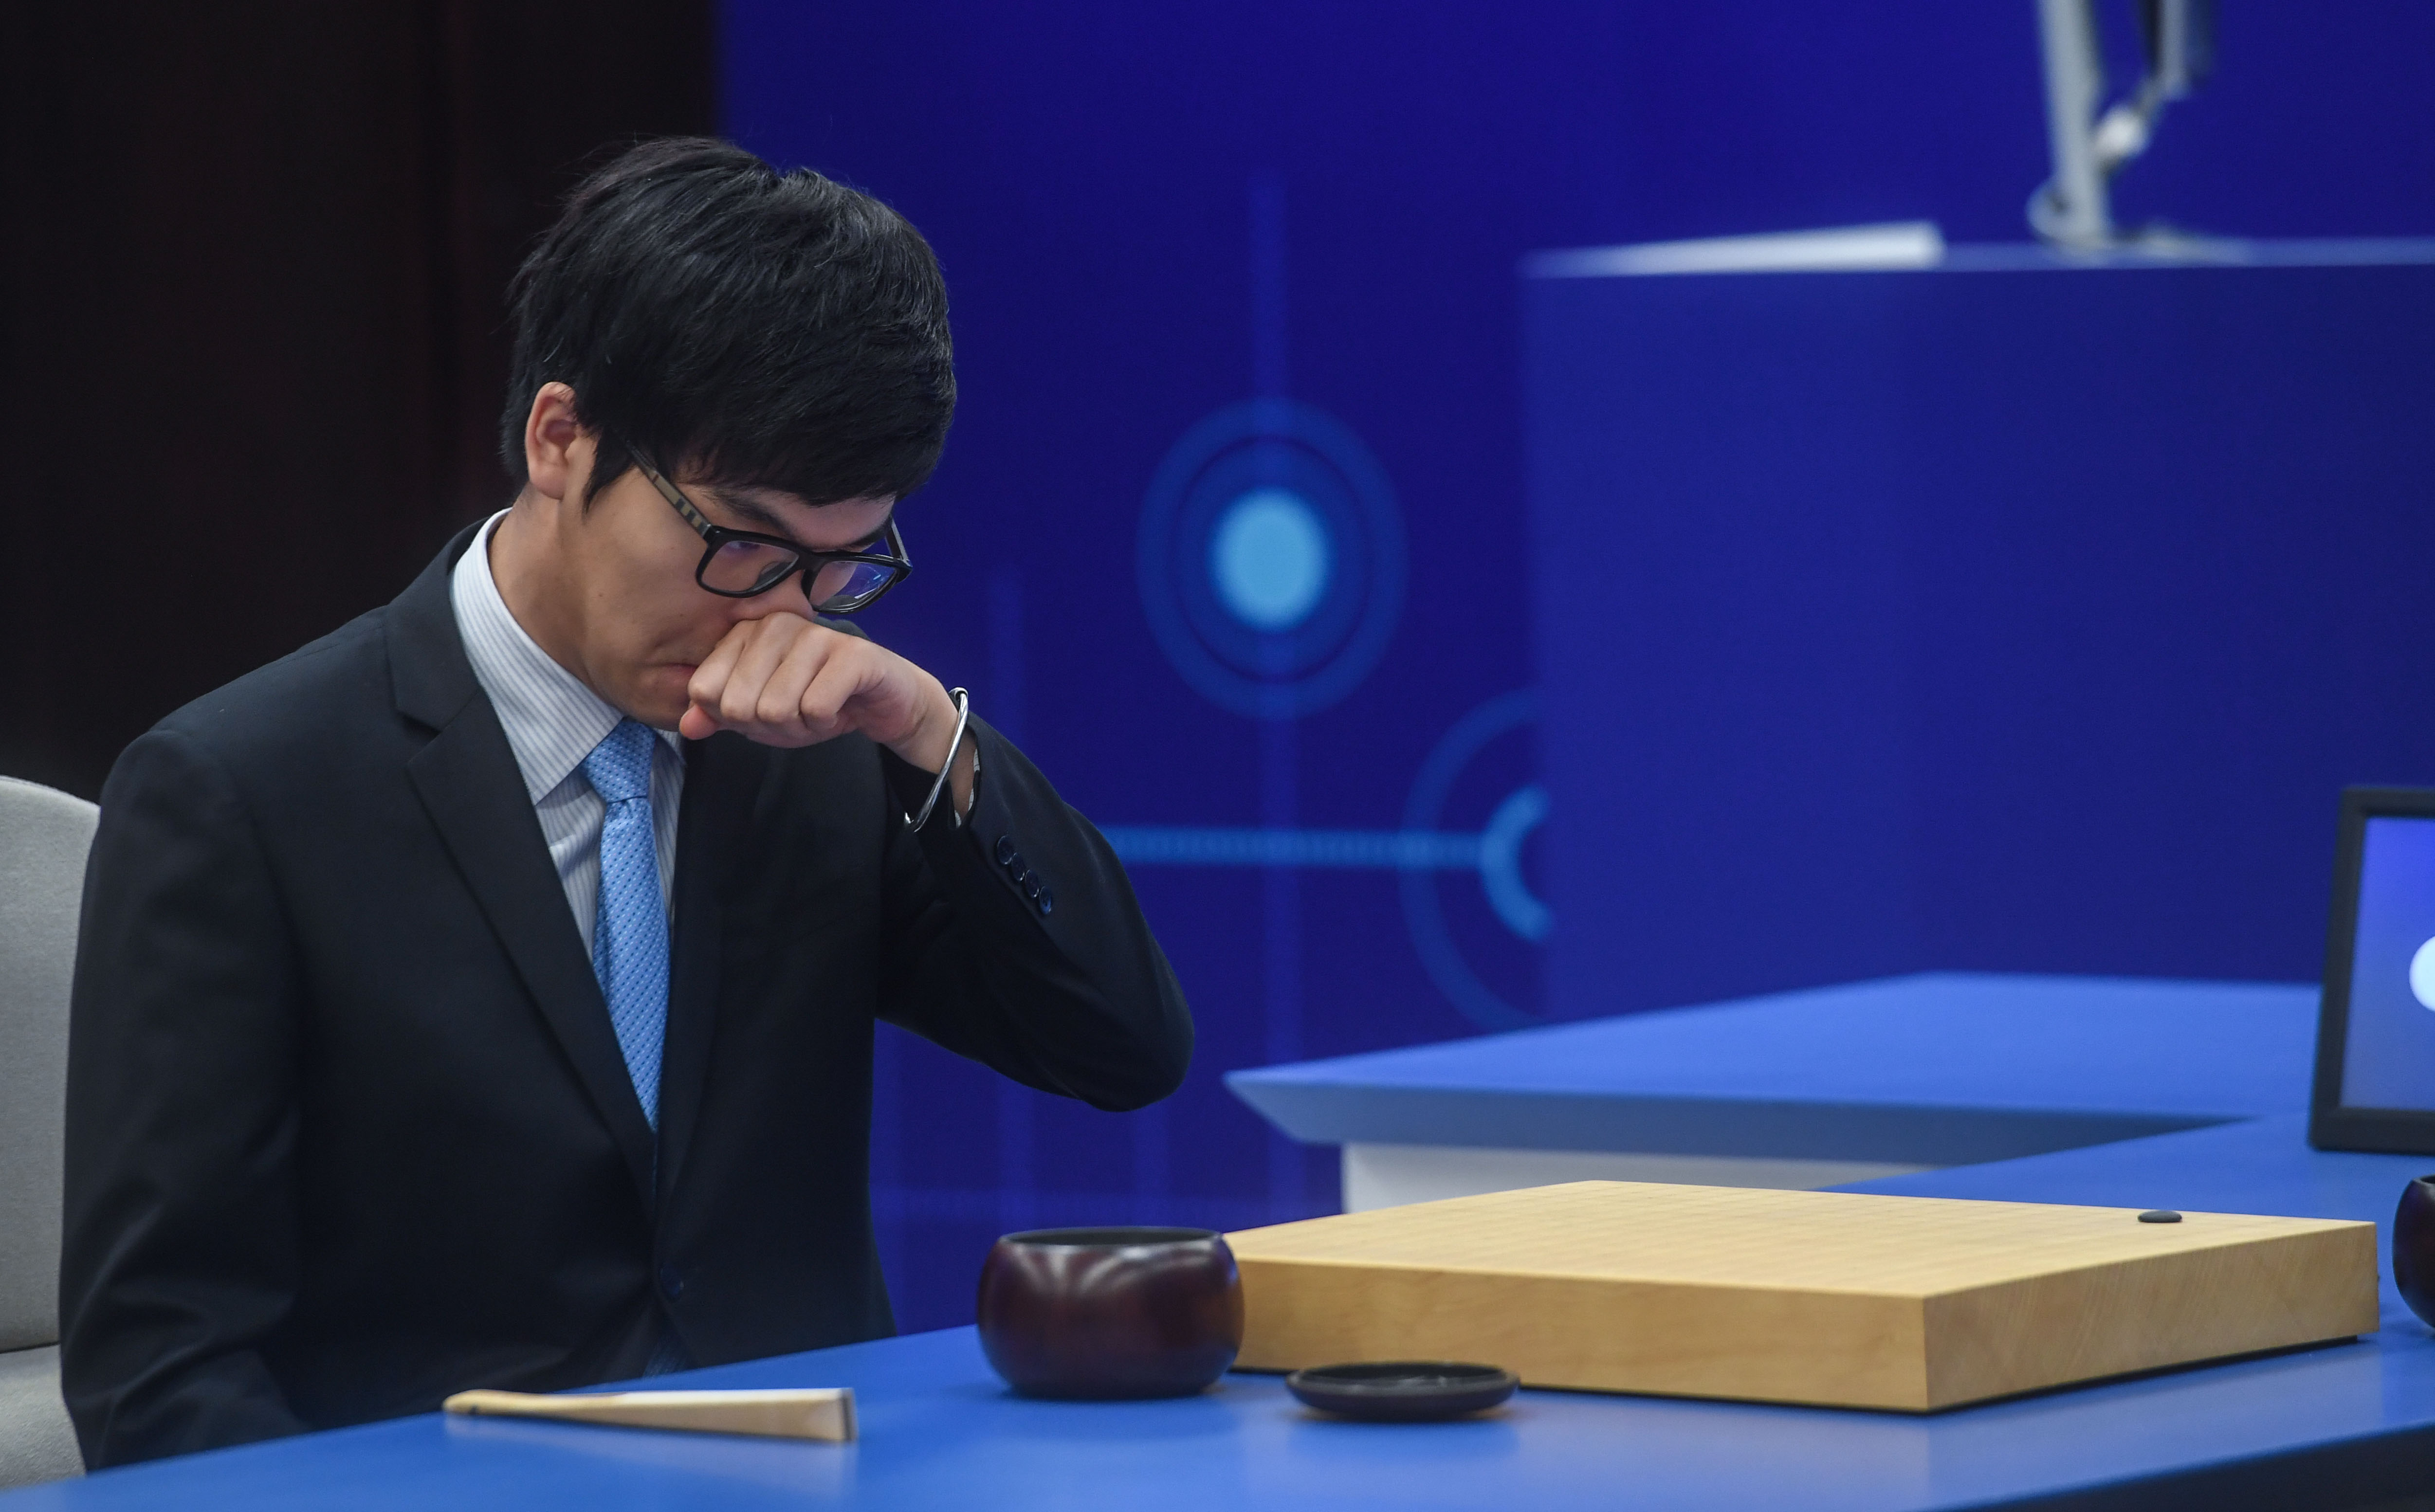 「人机大战」第二局:柯洁中盘认输 AlphaGo二连胜  - 香港文汇网